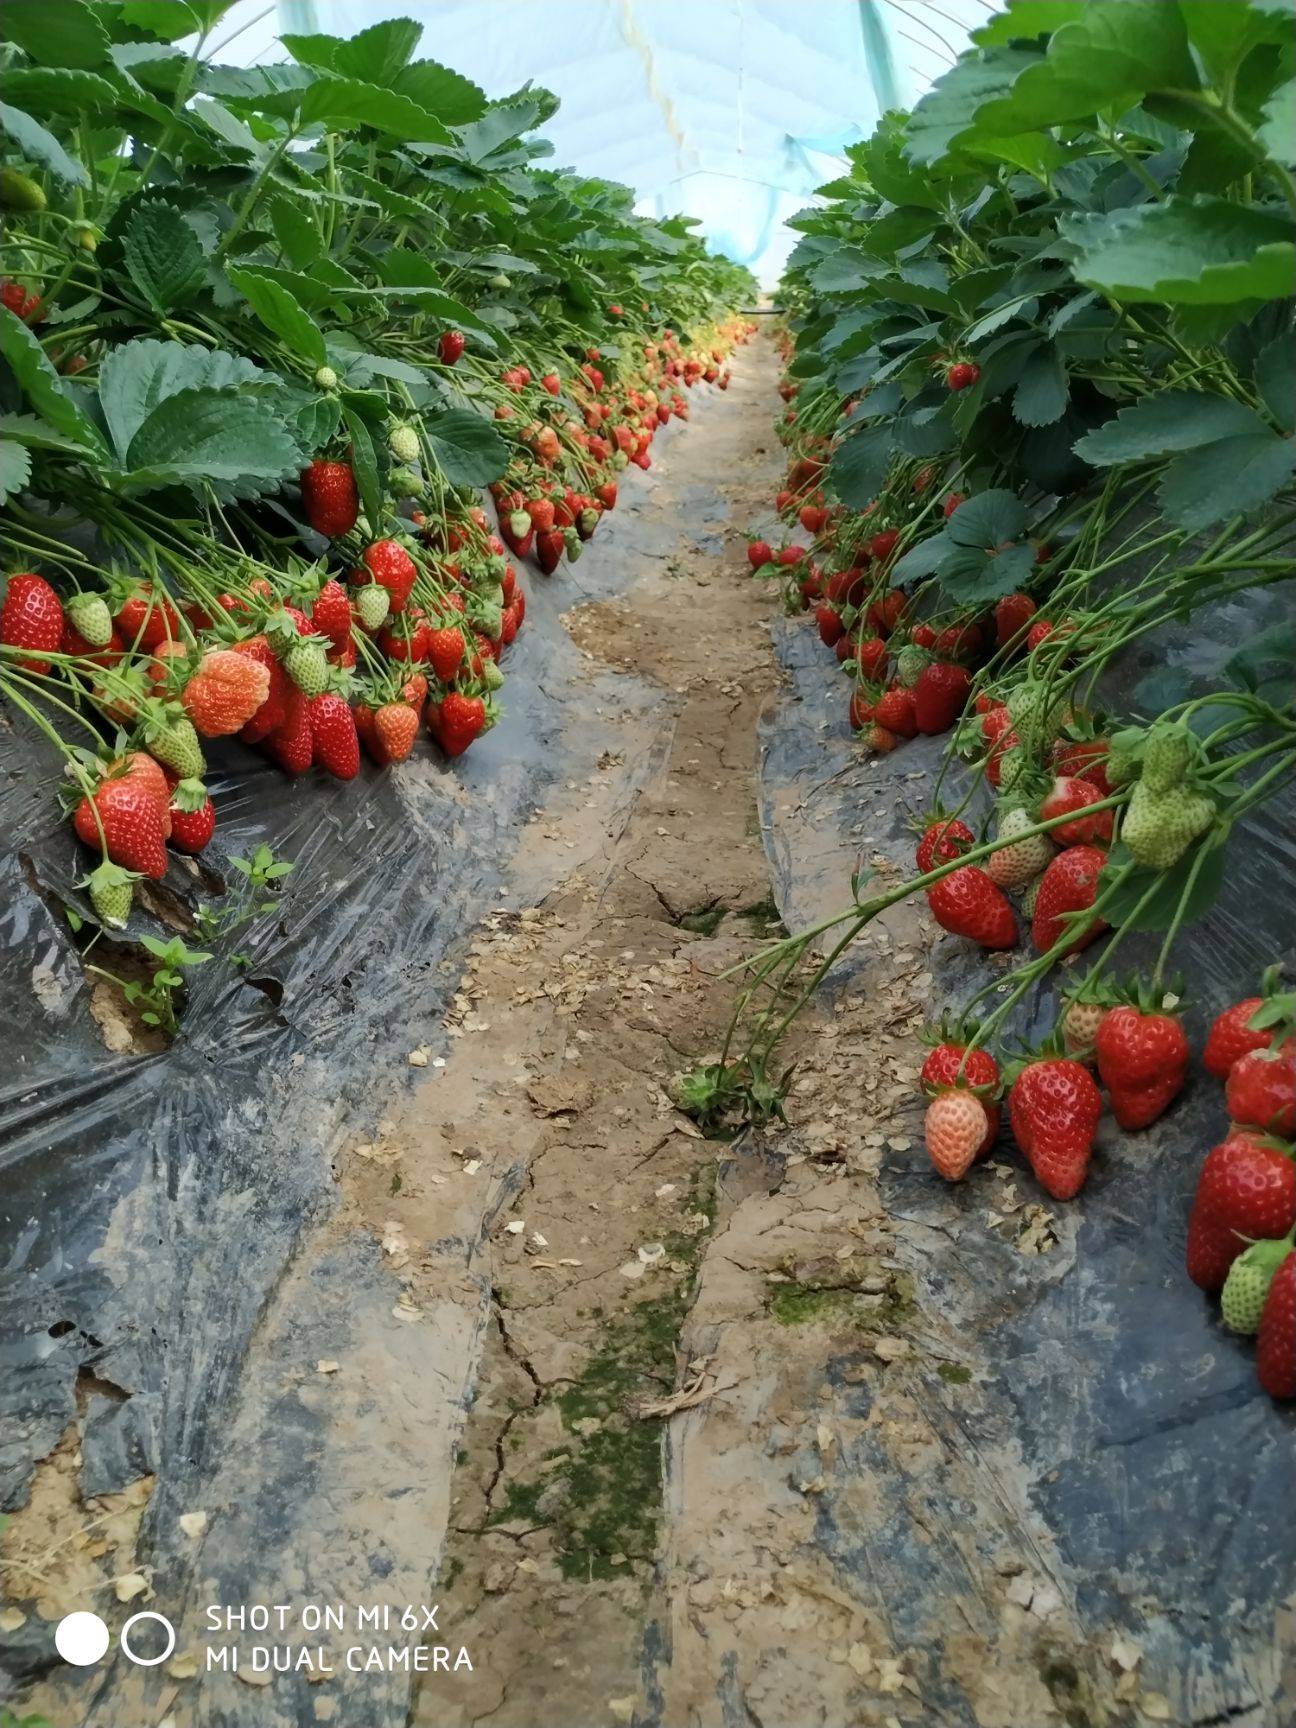 法兰地草莓的种植管理技术